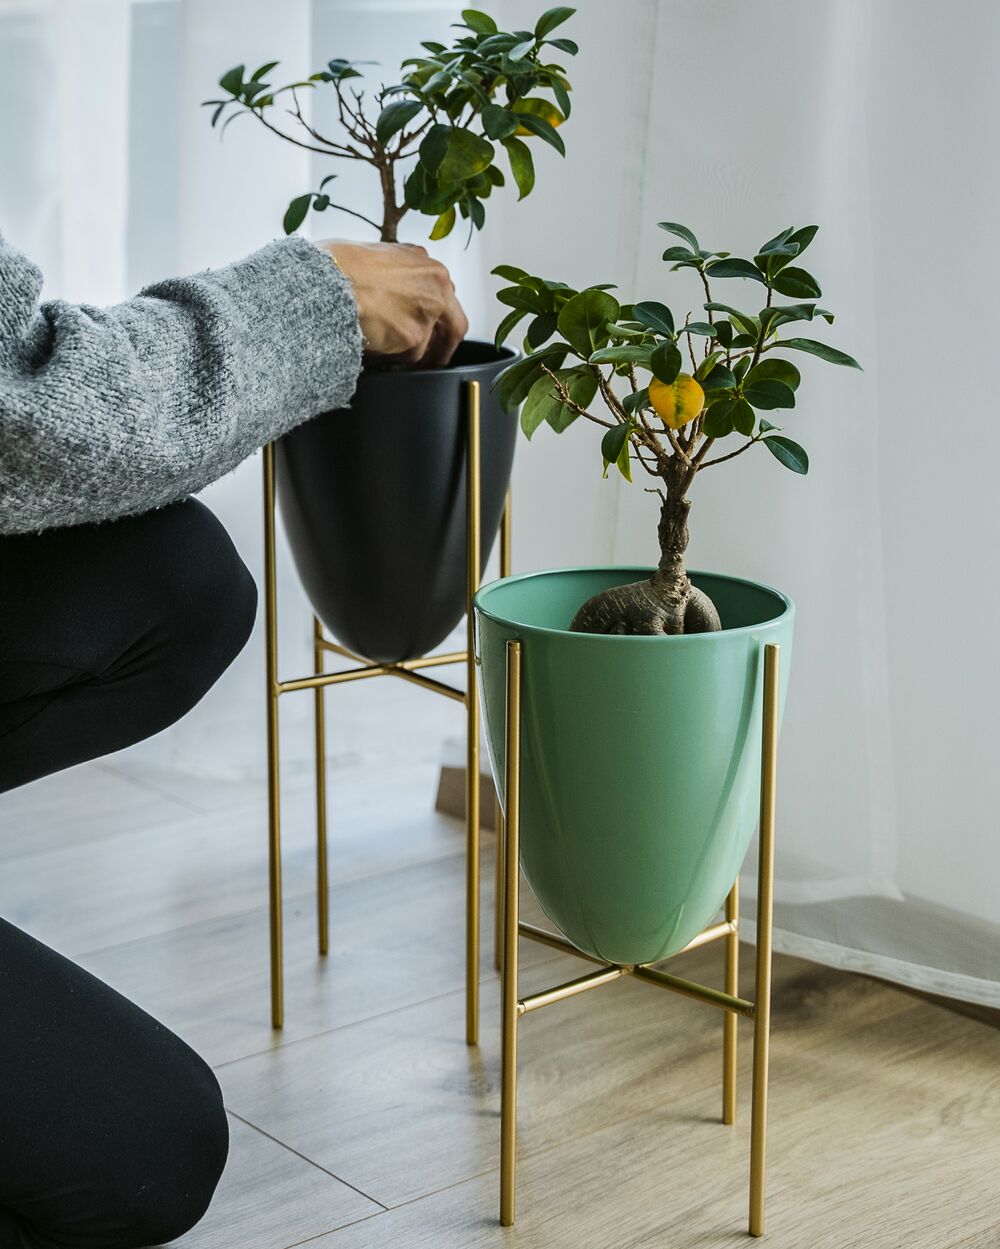 Acquista online vasi per piante da interni in sconto fino al 70%